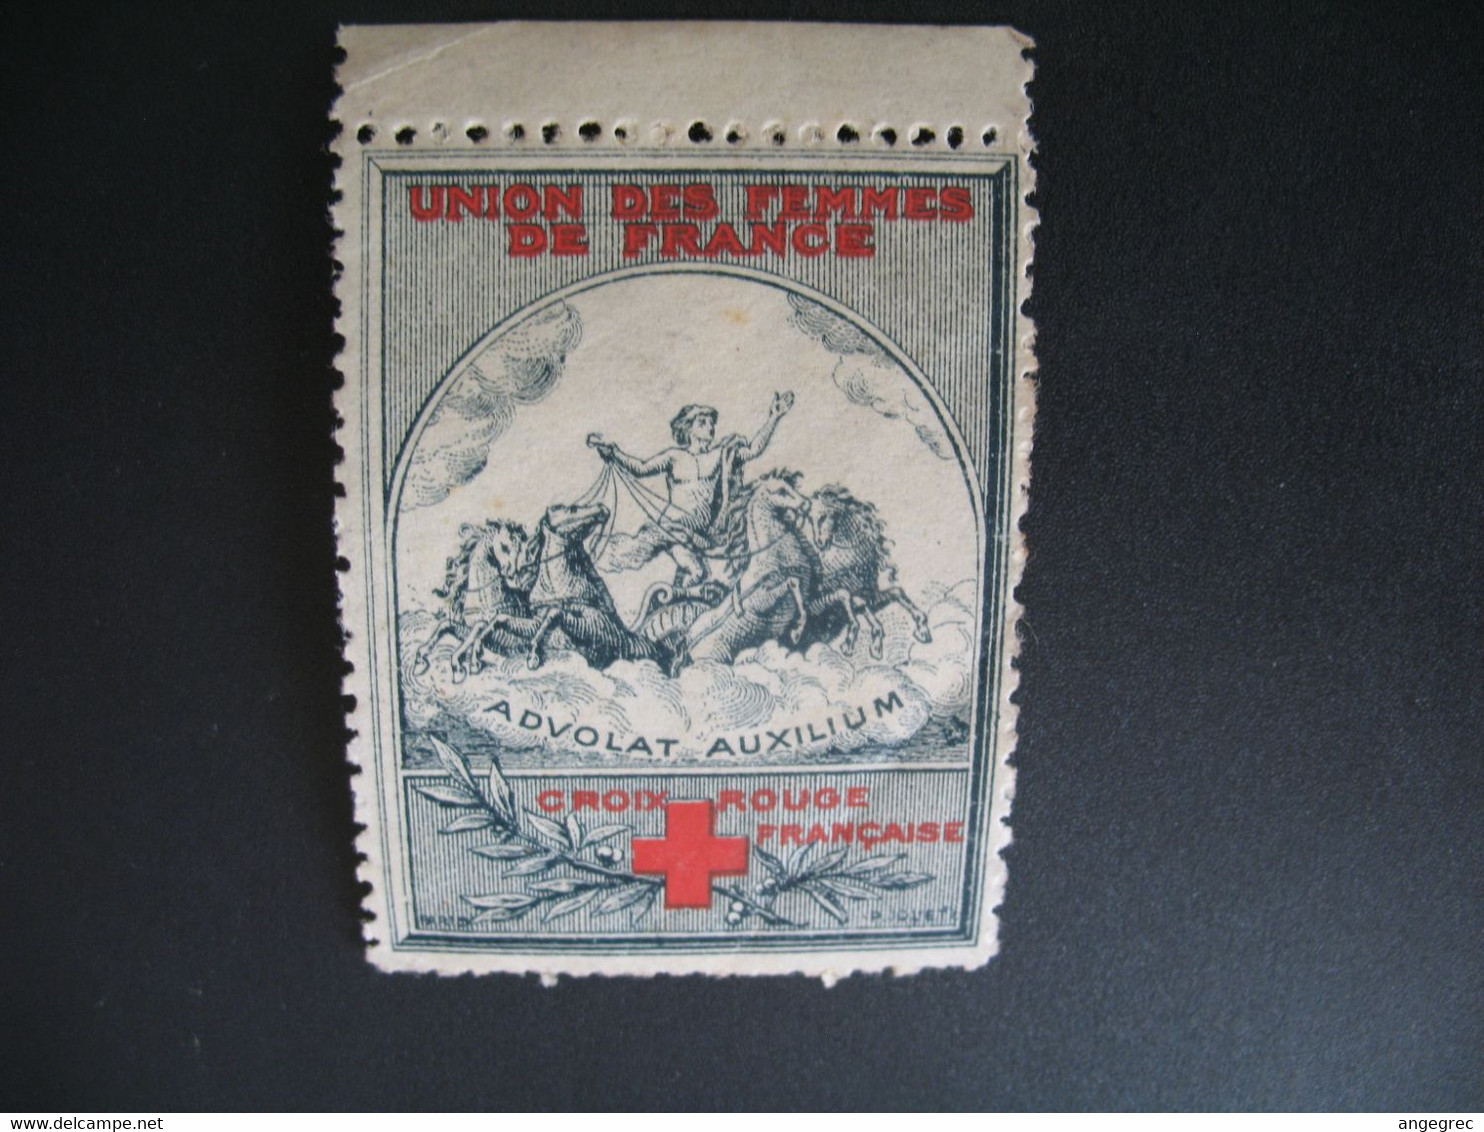 Vignette Militaire Delandre Guerre De 1914 - Croix Rouge - Red Cross - Croix Rouge Française   Advolat Auxilium - Red Cross